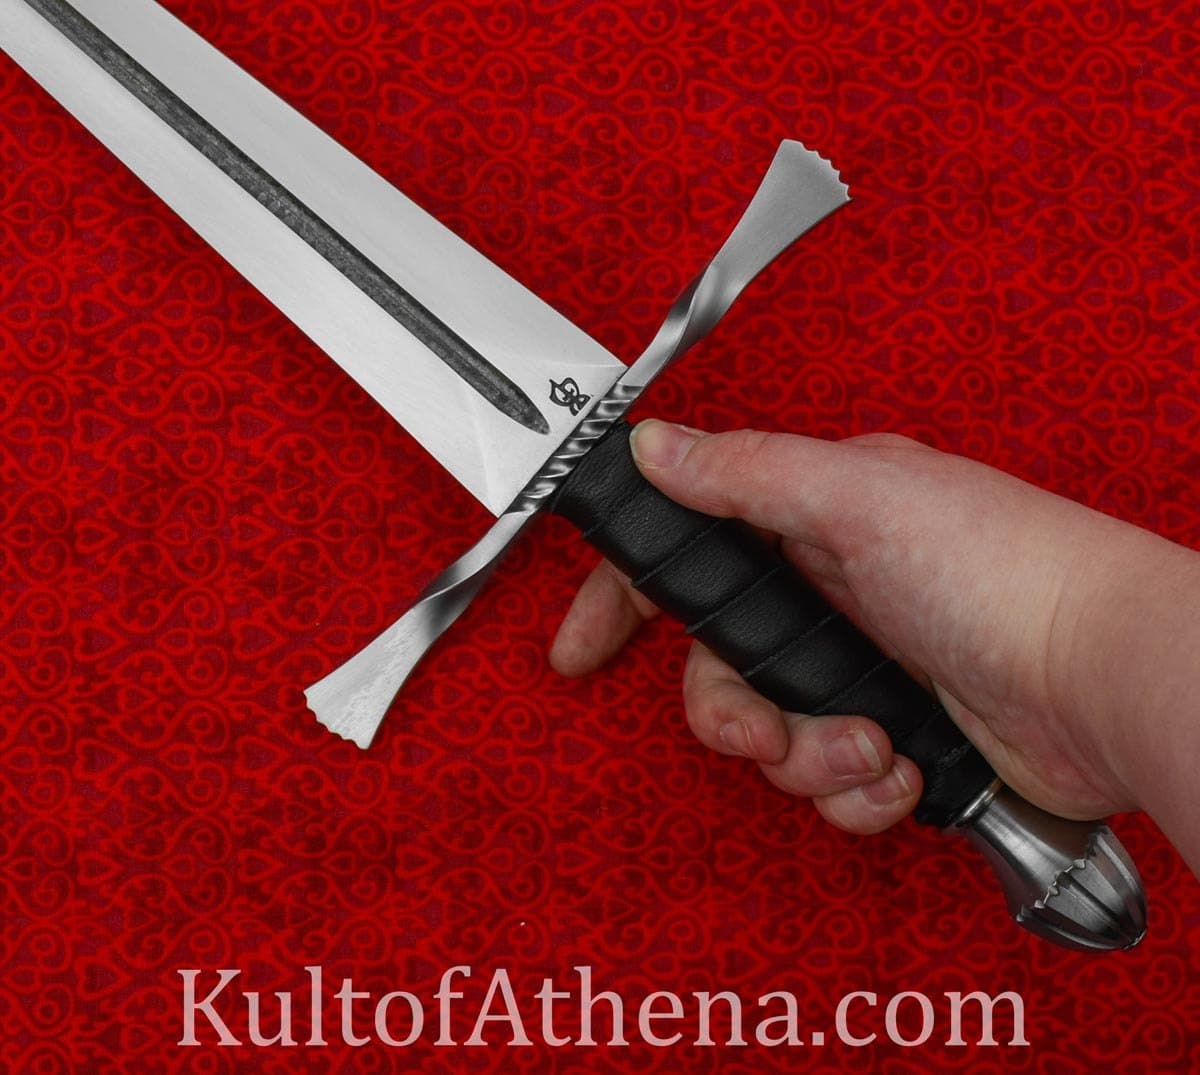 BKS - Ritter's Sword-Hilted Dagger